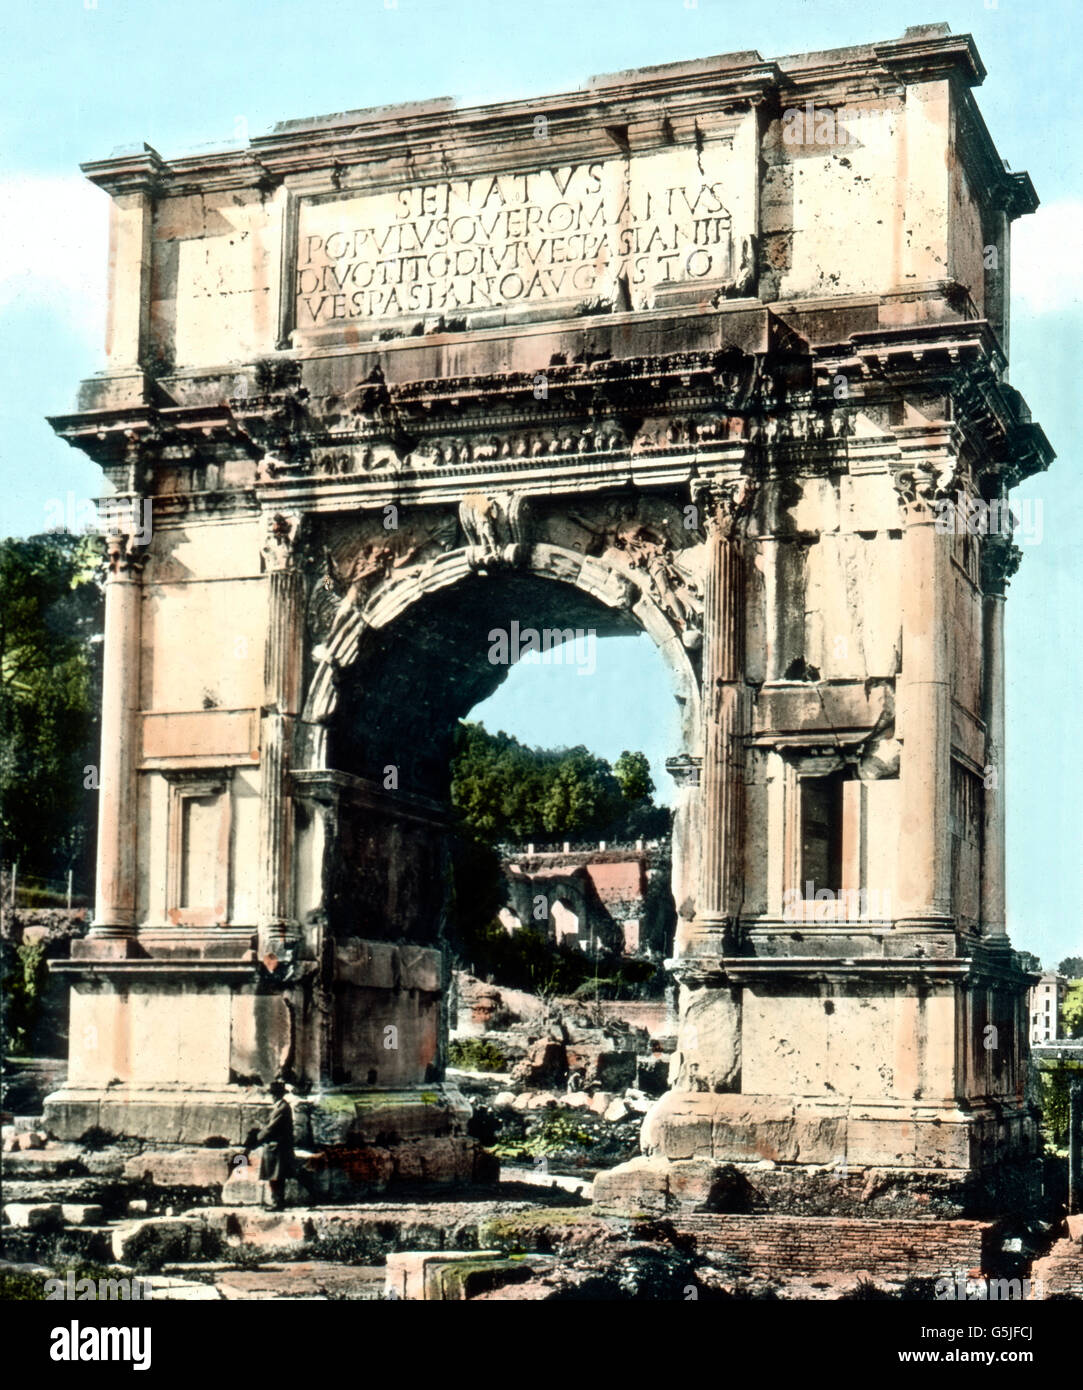 Der Titusbogen am Eingang zum Forum Romanum in Rom, Italien 1920er Jahre. Arco di Tito all'ingresso del Forum Romanum, Italia 1920s. Foto Stock